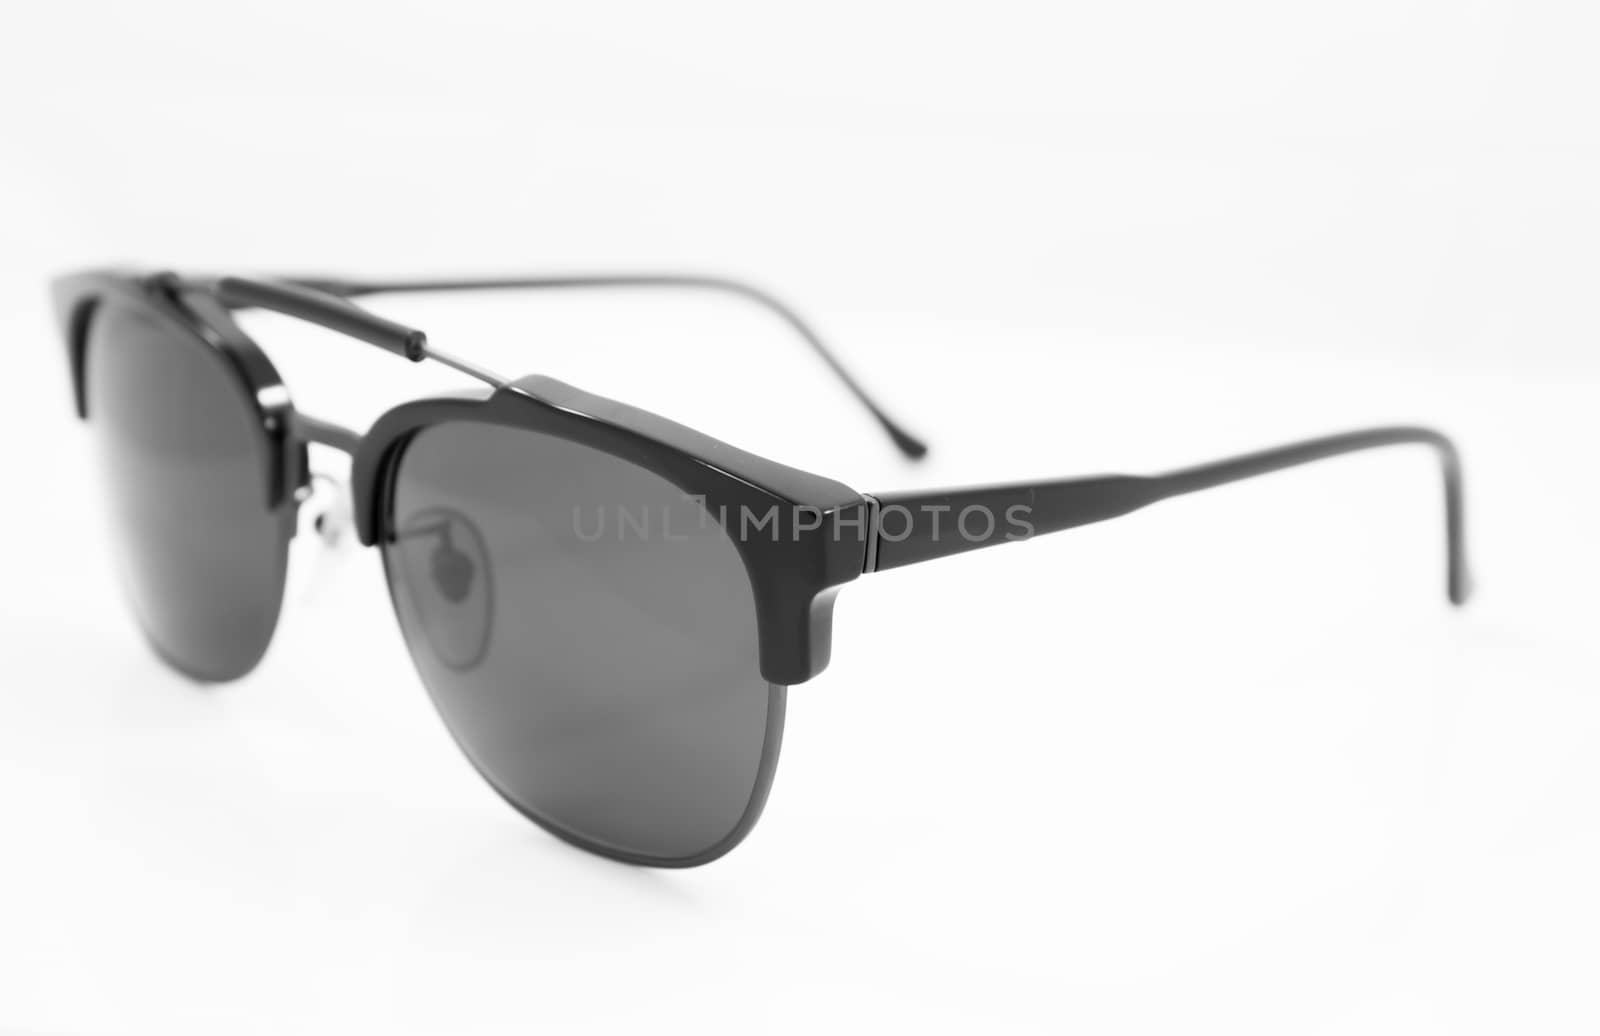 Black sunglasses isolated on white background, stock photo